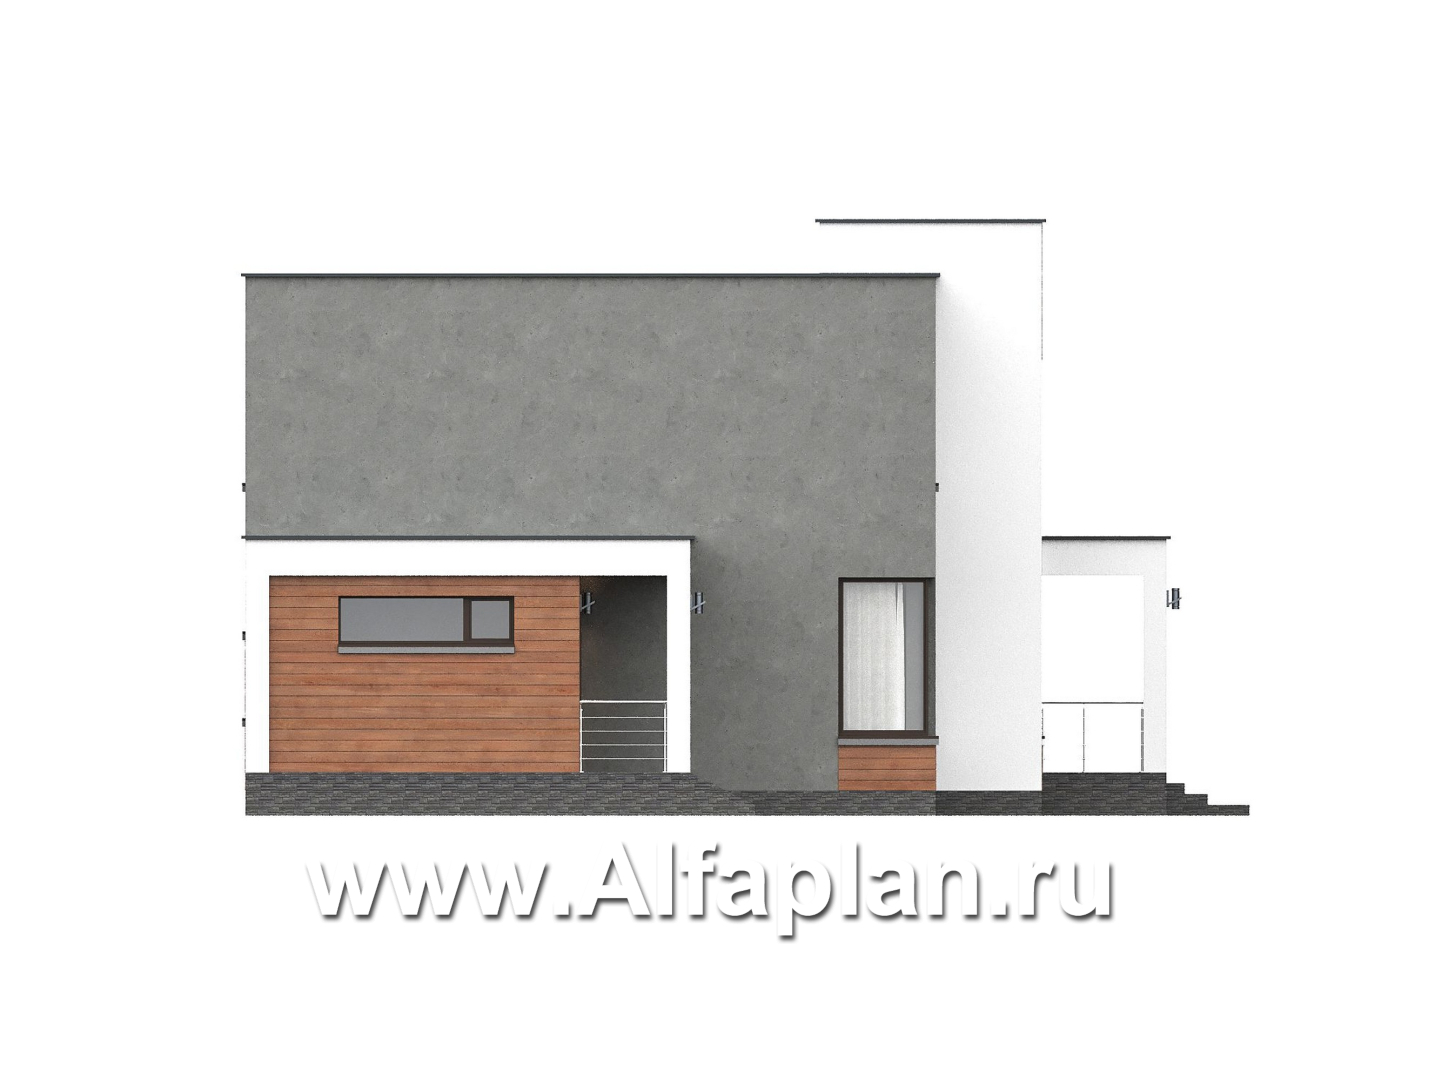 «Селектум» - красивый проект двухэтажного дома, планировка с мастер спальней, двусветная столовая, плоская крыша, в стиле минимализм - фасад дома